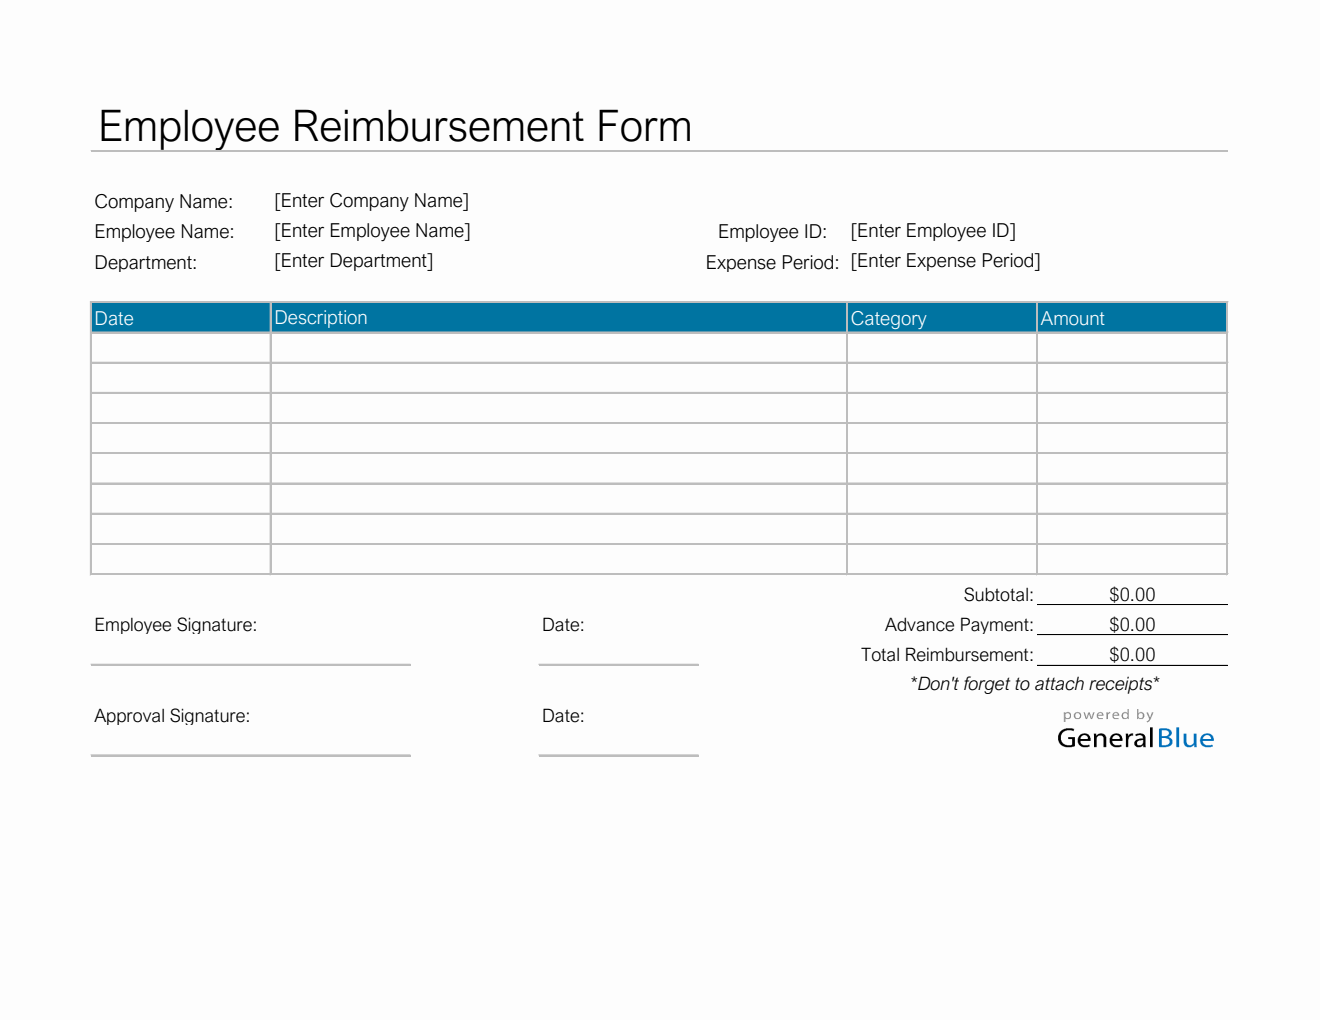 Employee Reimbursement Form in Excel (Simple)